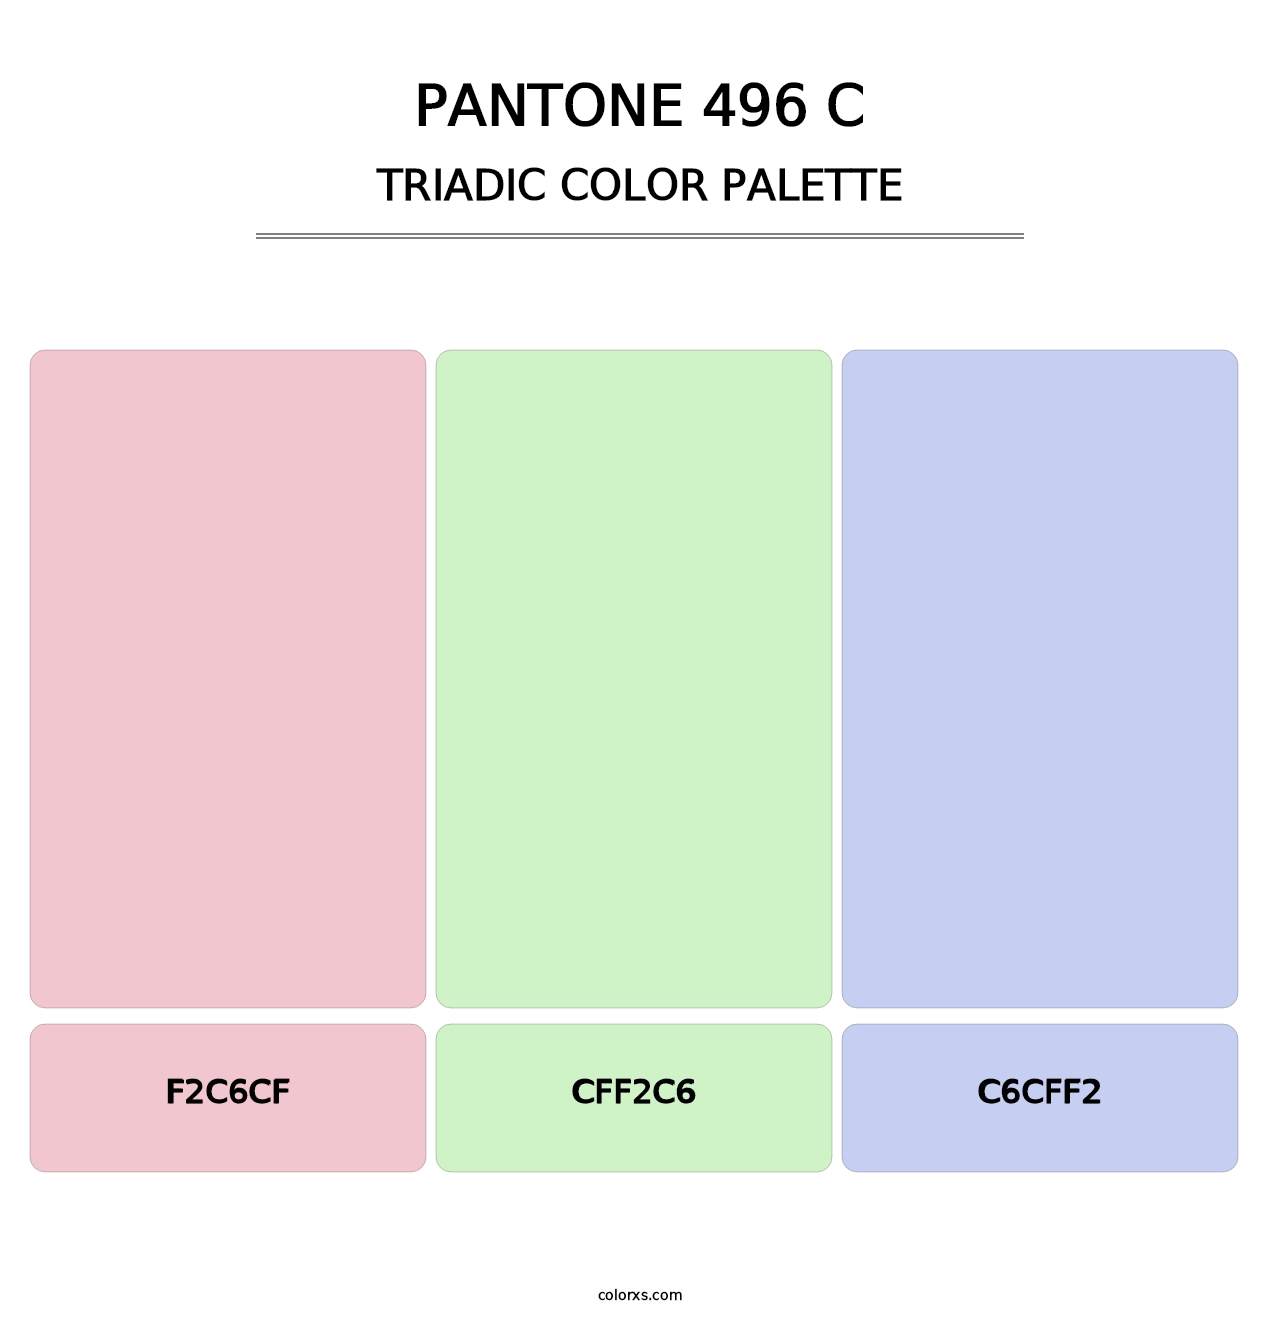 PANTONE 496 C - Triadic Color Palette